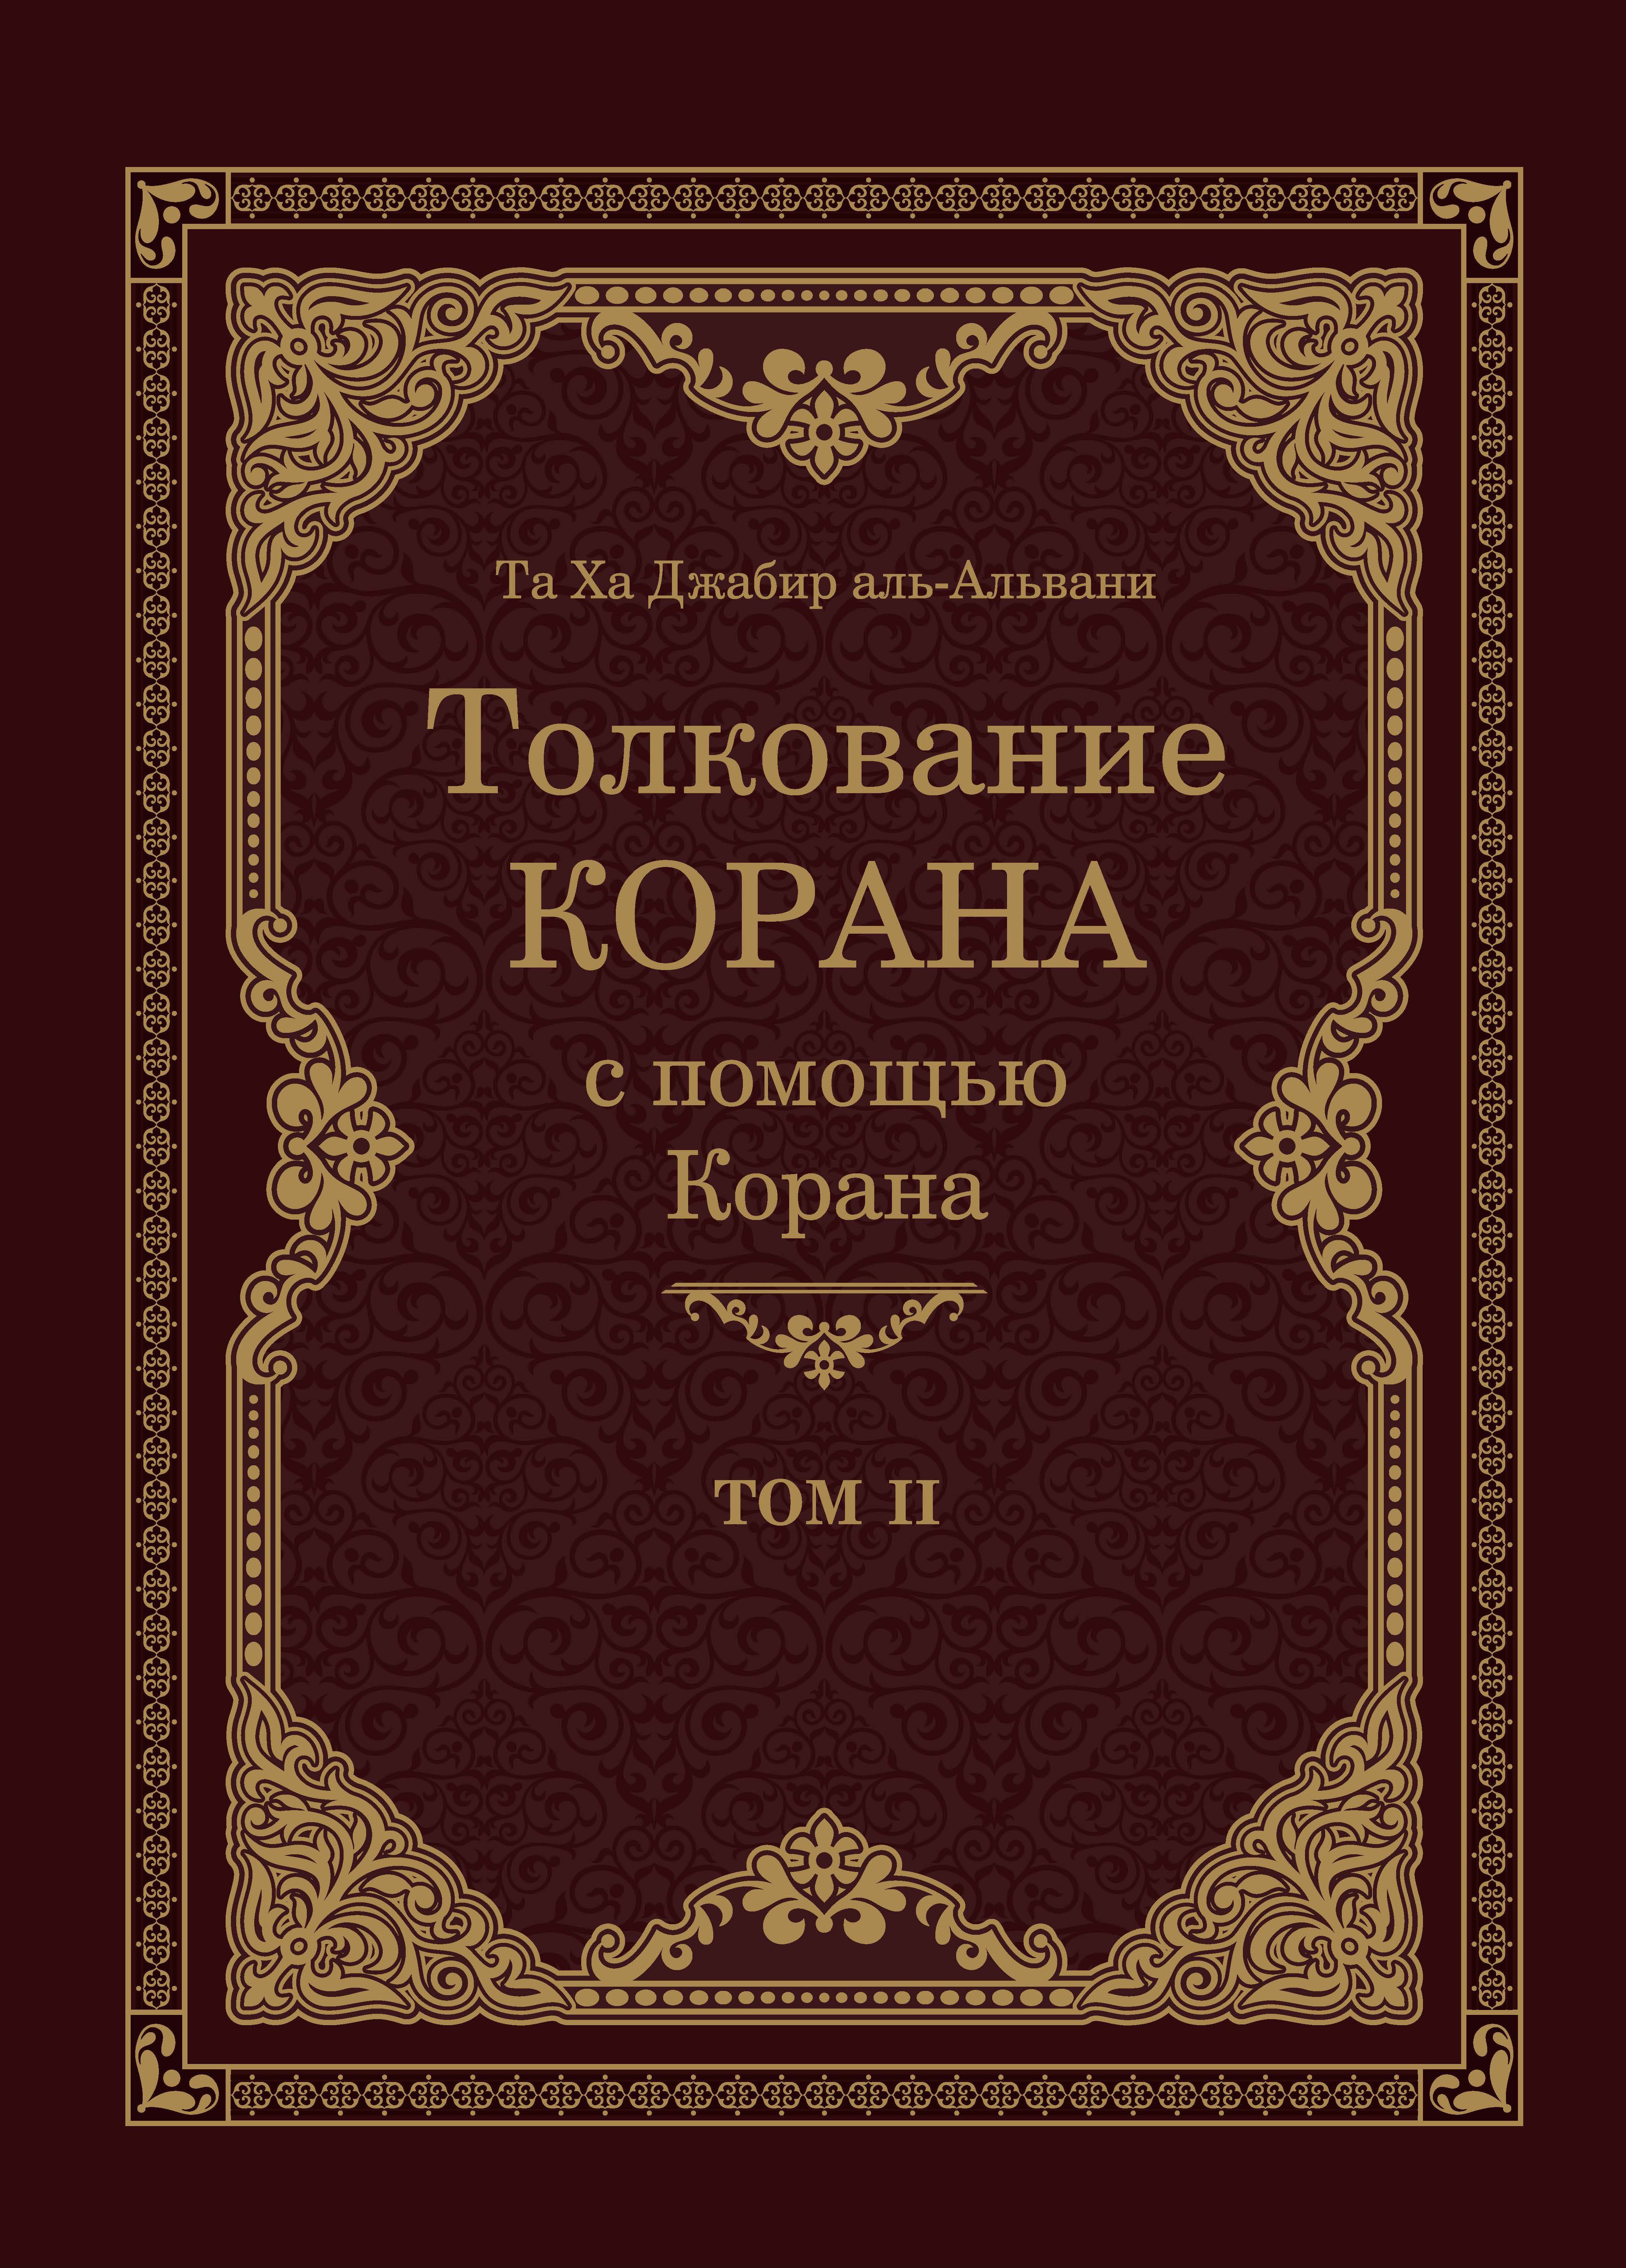 Russian: Толкование Корана С Помощью Корана II (Tafsīr al-Qurān bil-Qur`ān - 2)